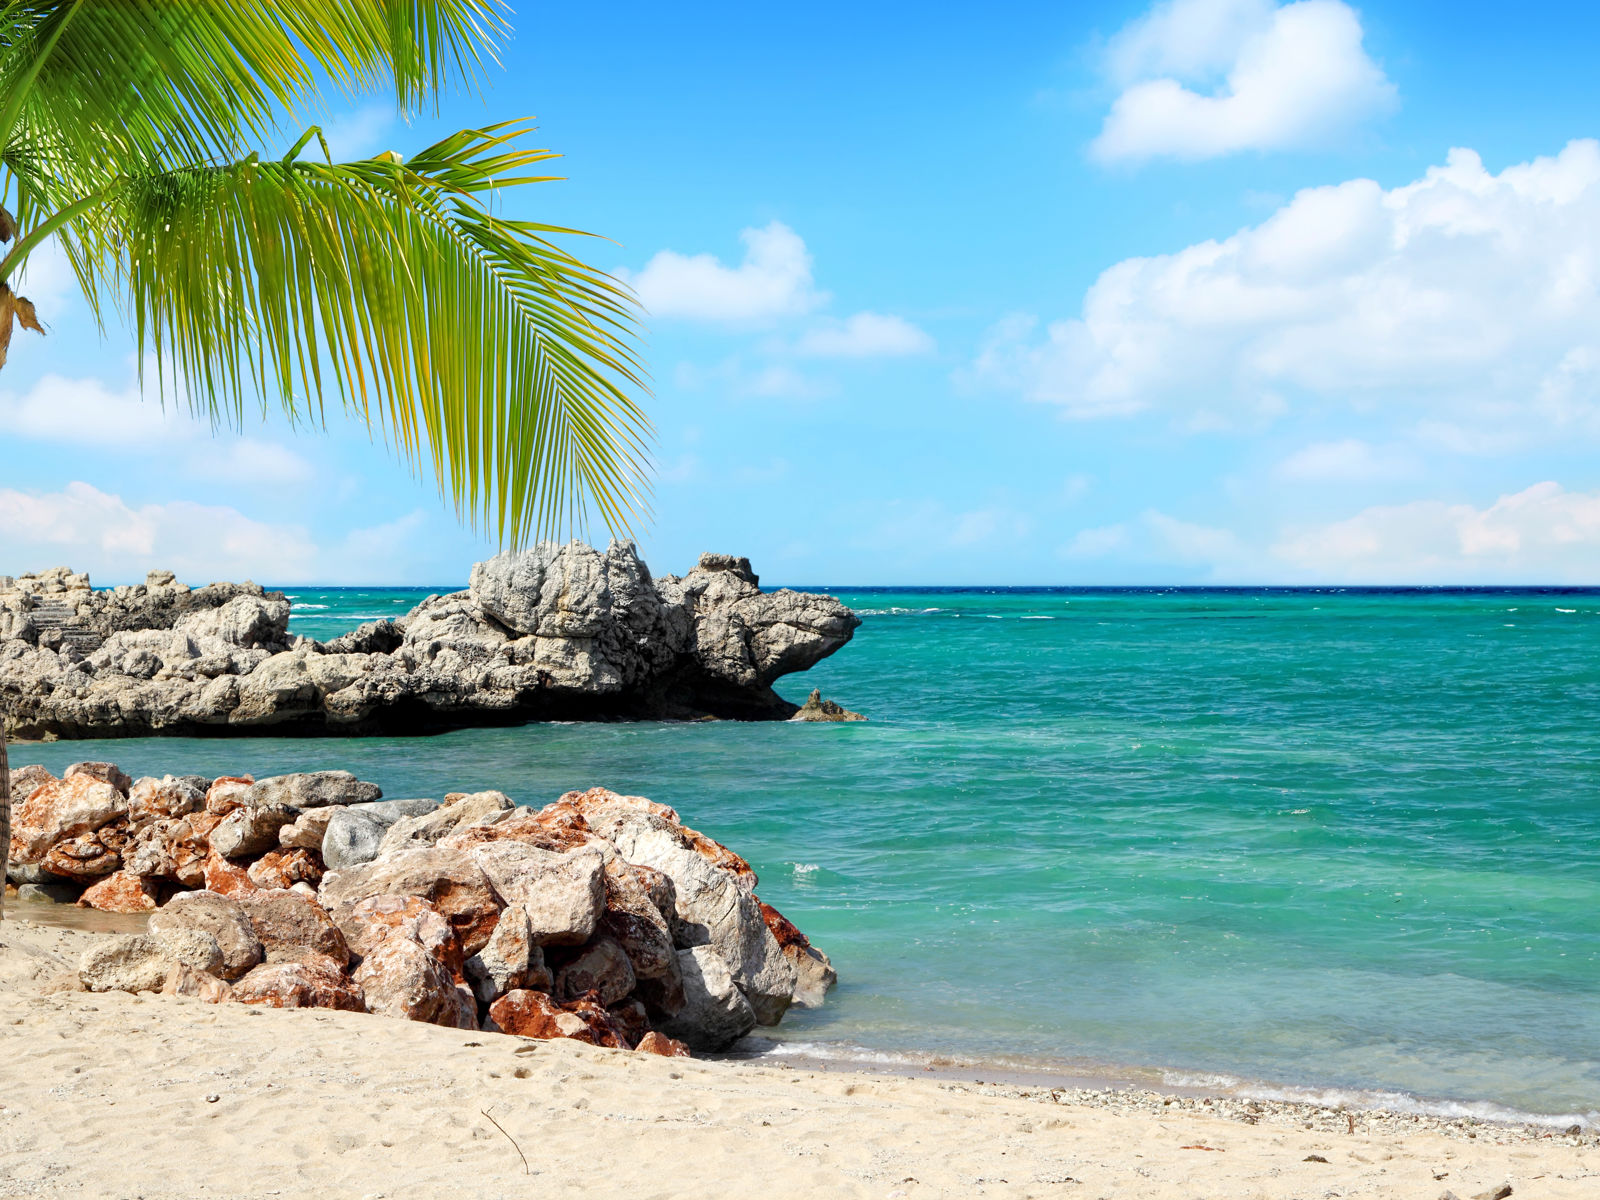 Resa till Haiti - Tropisk strand med palmer, klippformationer och turkost hav under blå himmel.